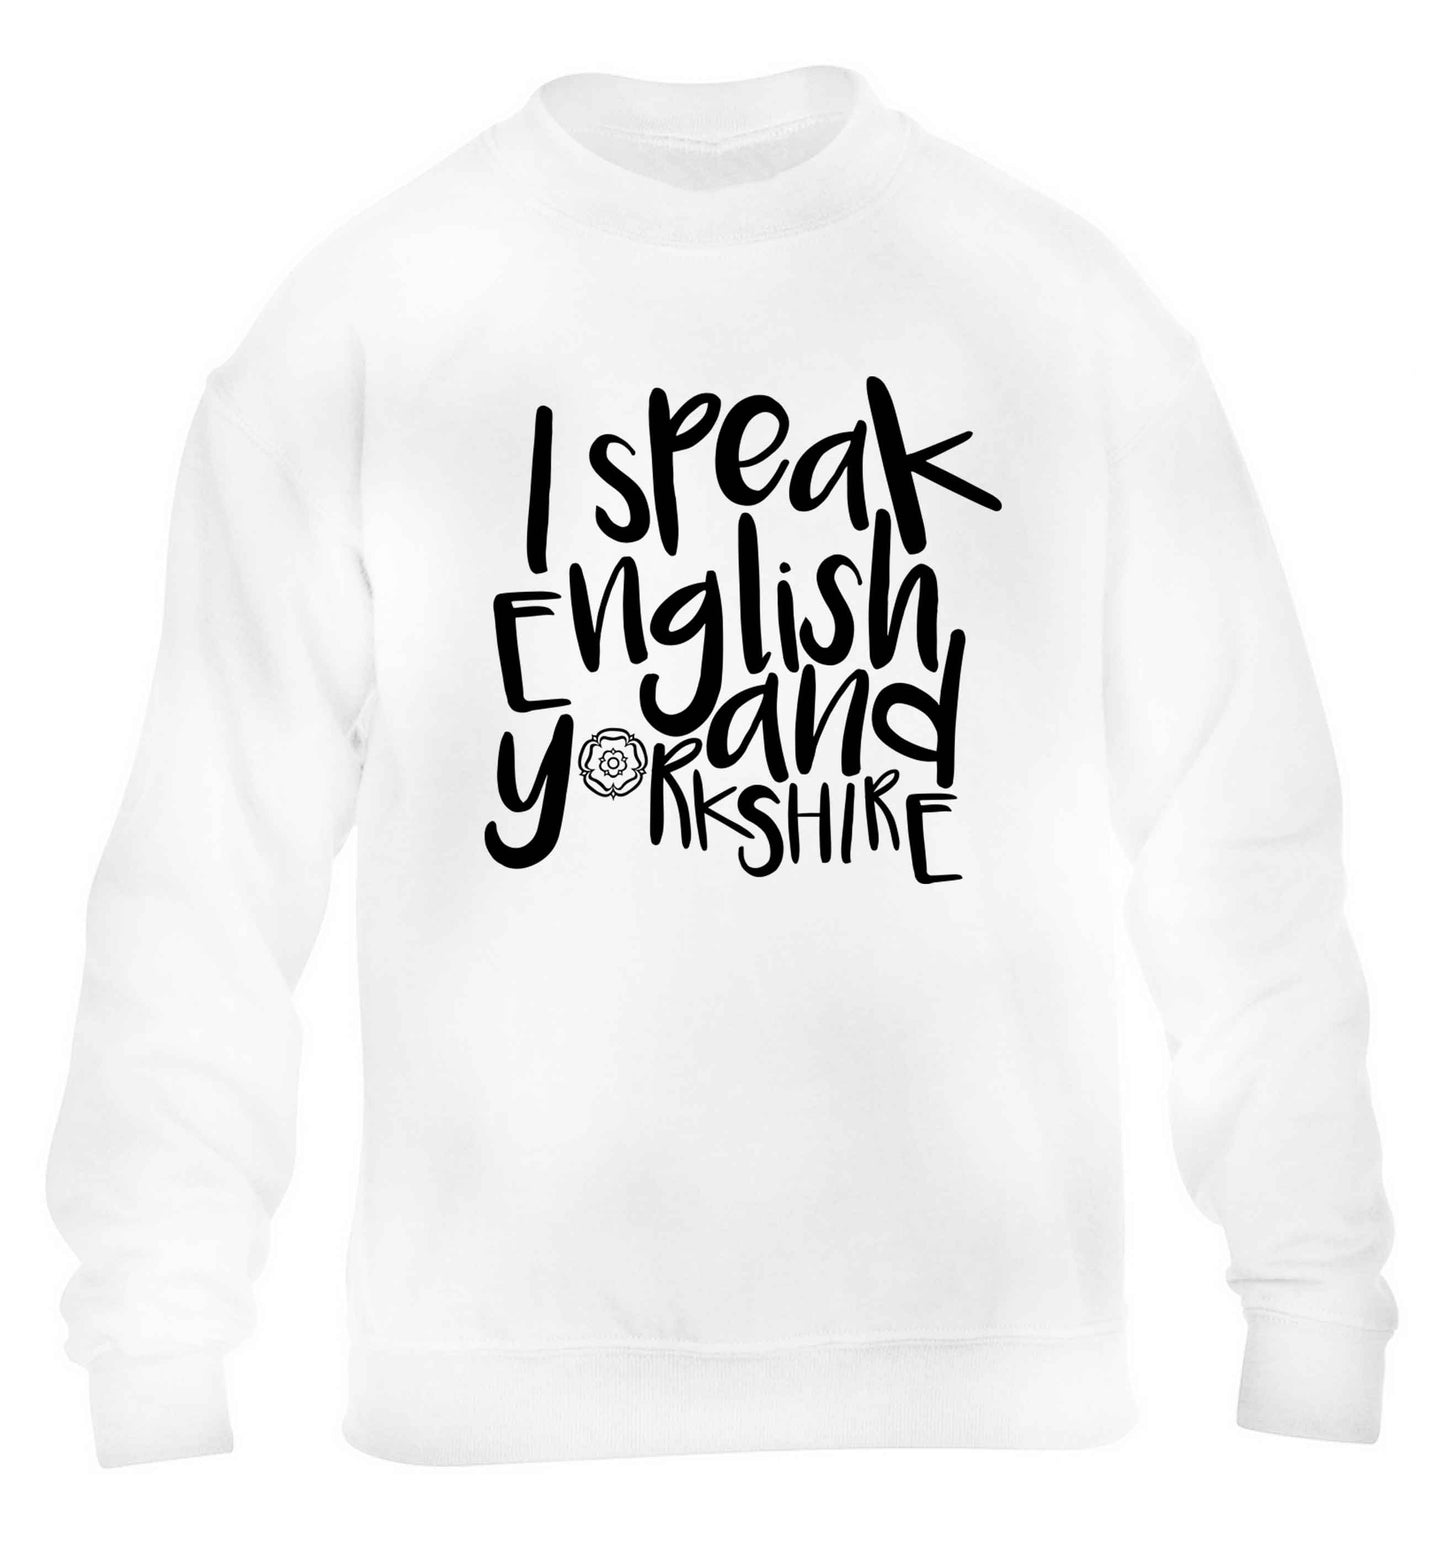 I speak English and Yorkshire children's white sweater 12-13 Years